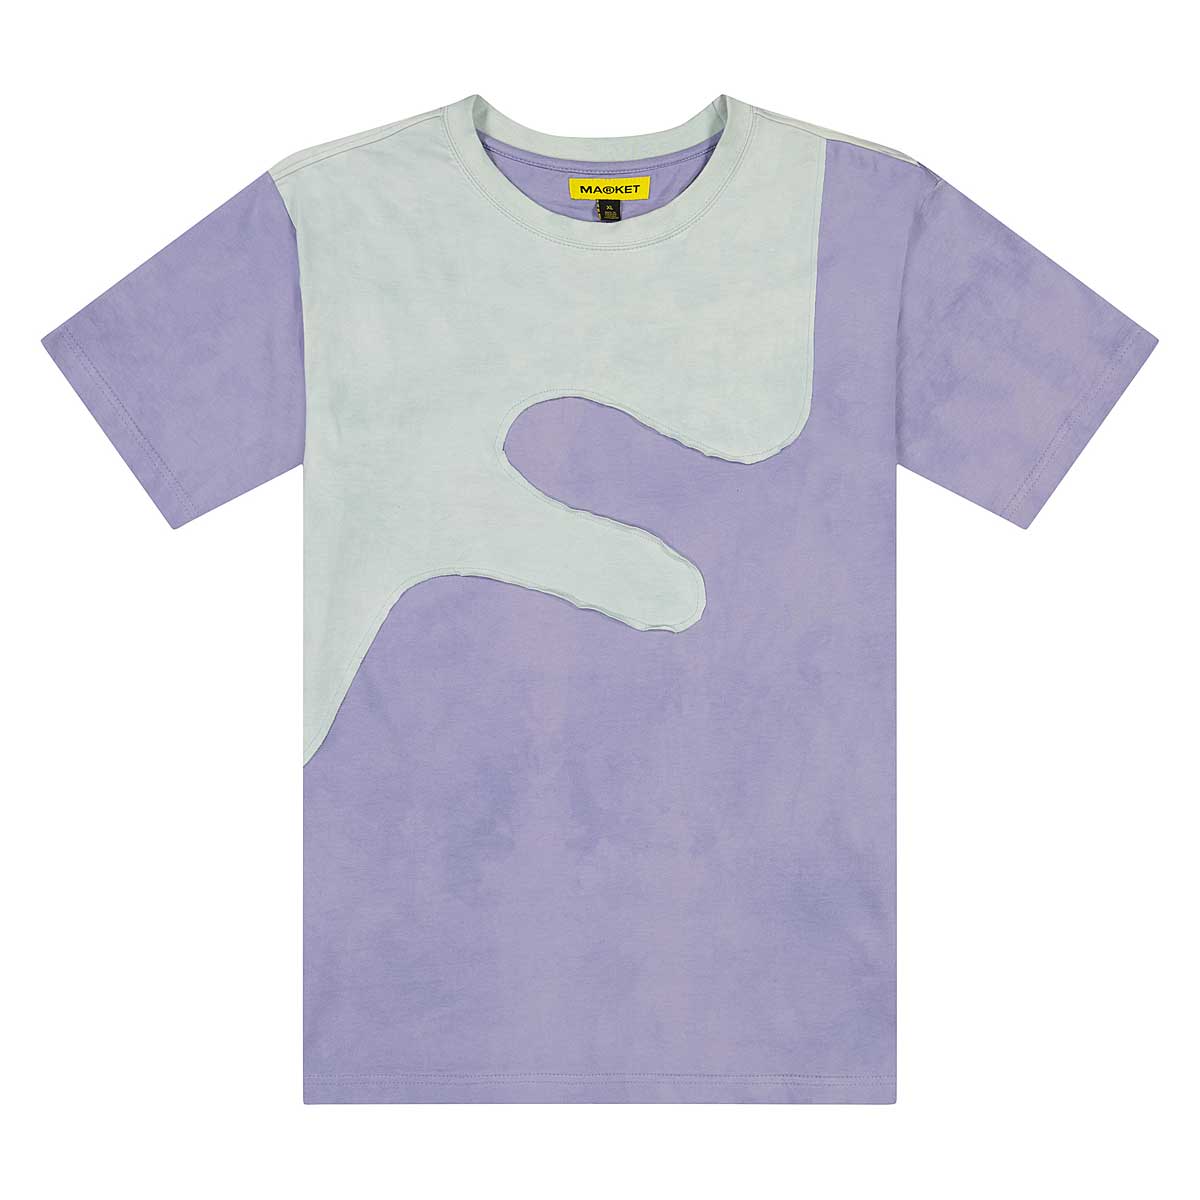 Market Deep End T-Shirt, Lavender Pale Gray